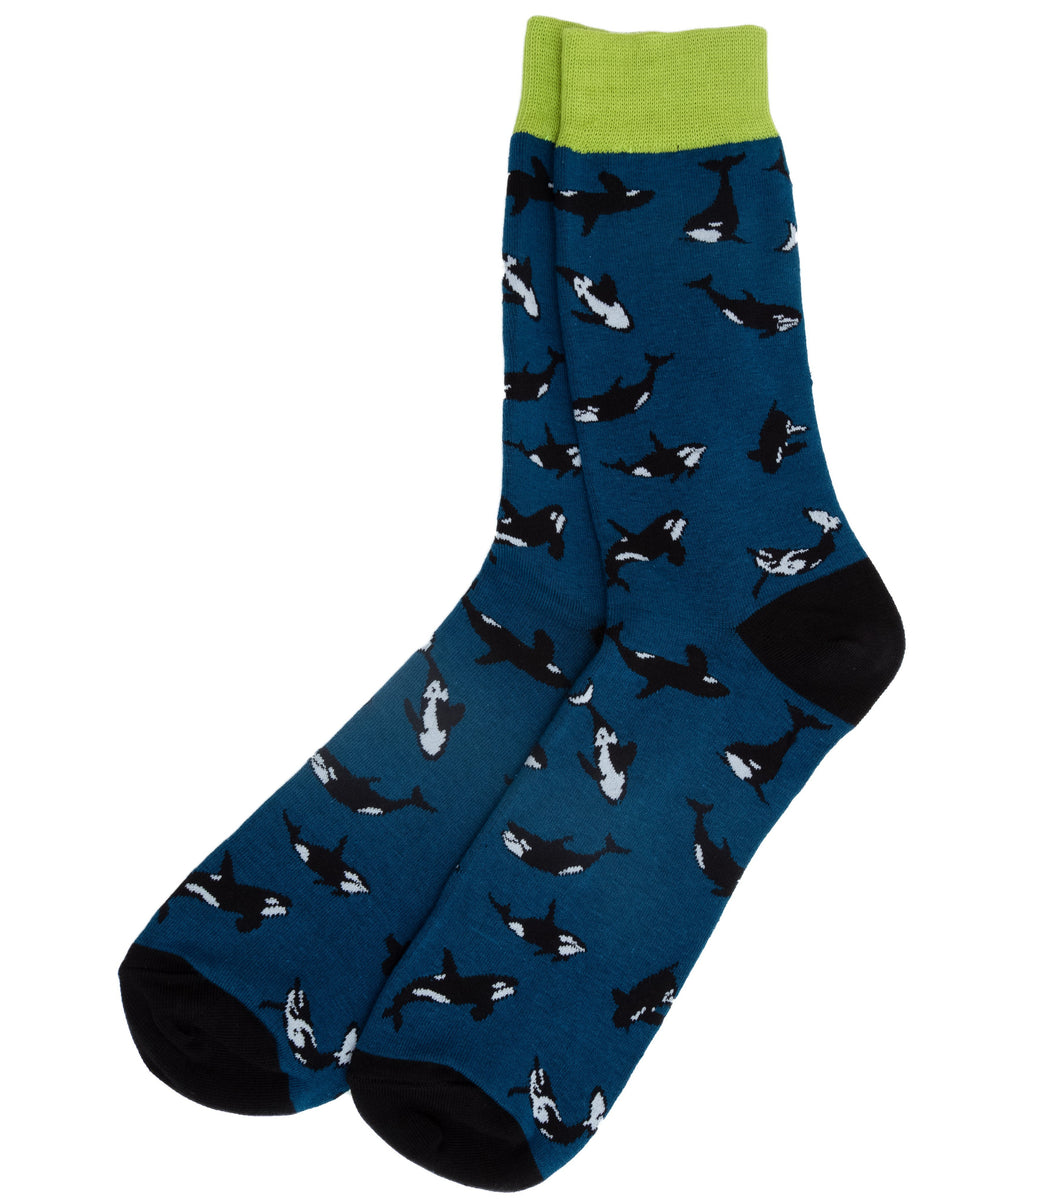 Whale Socks